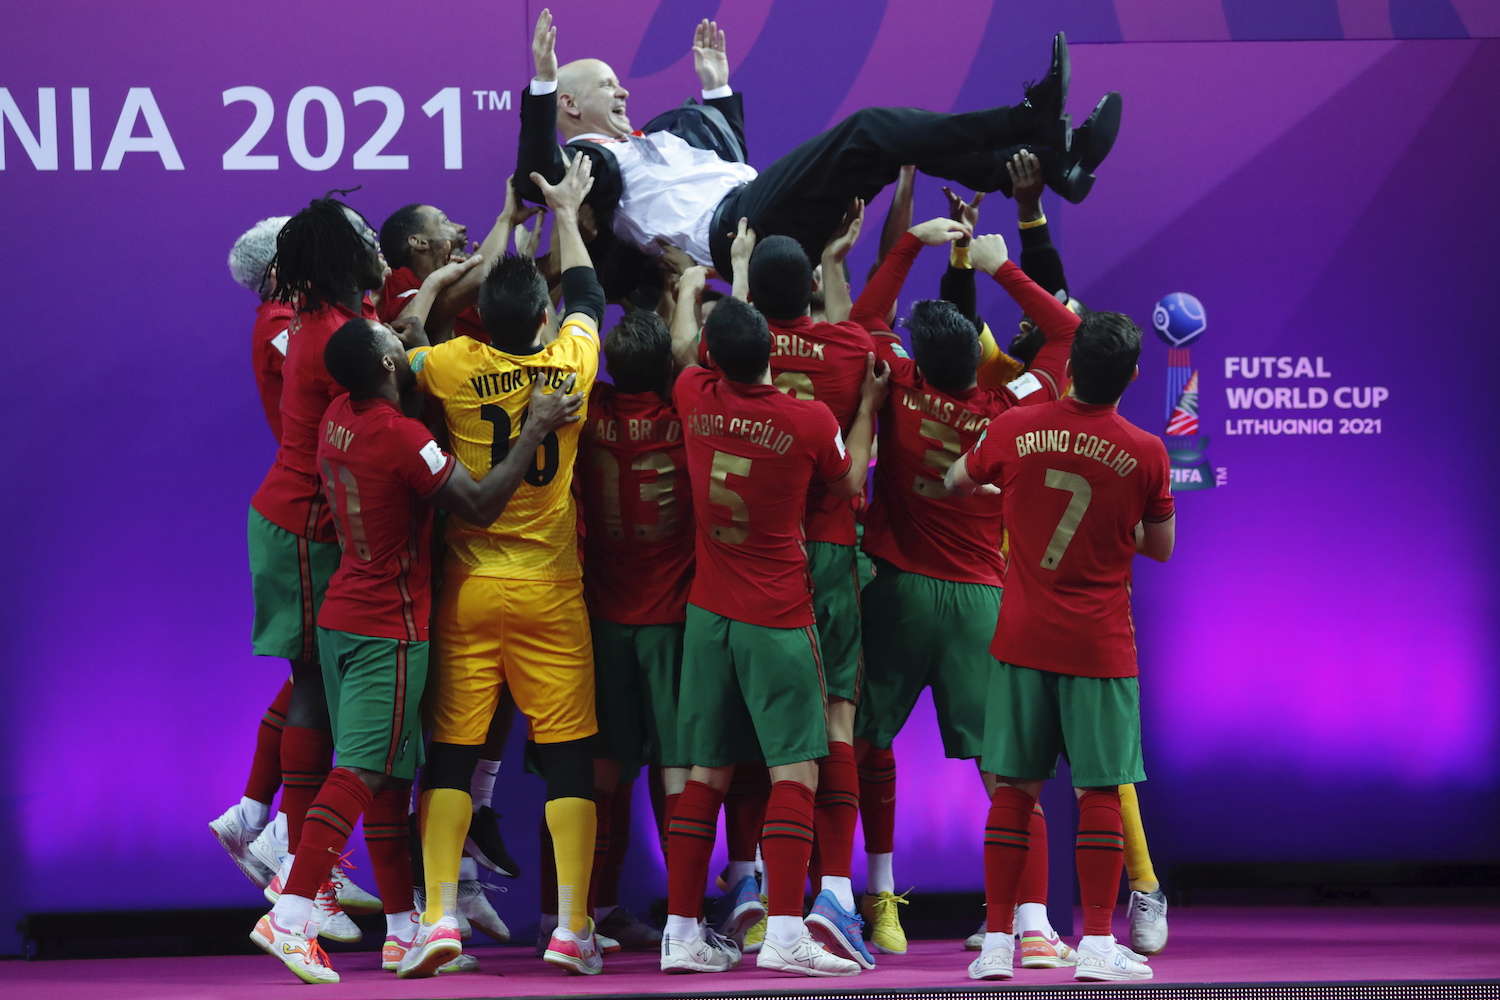 Futsal: Portugal é Campeão do Mundo depois de vencer a Argentina